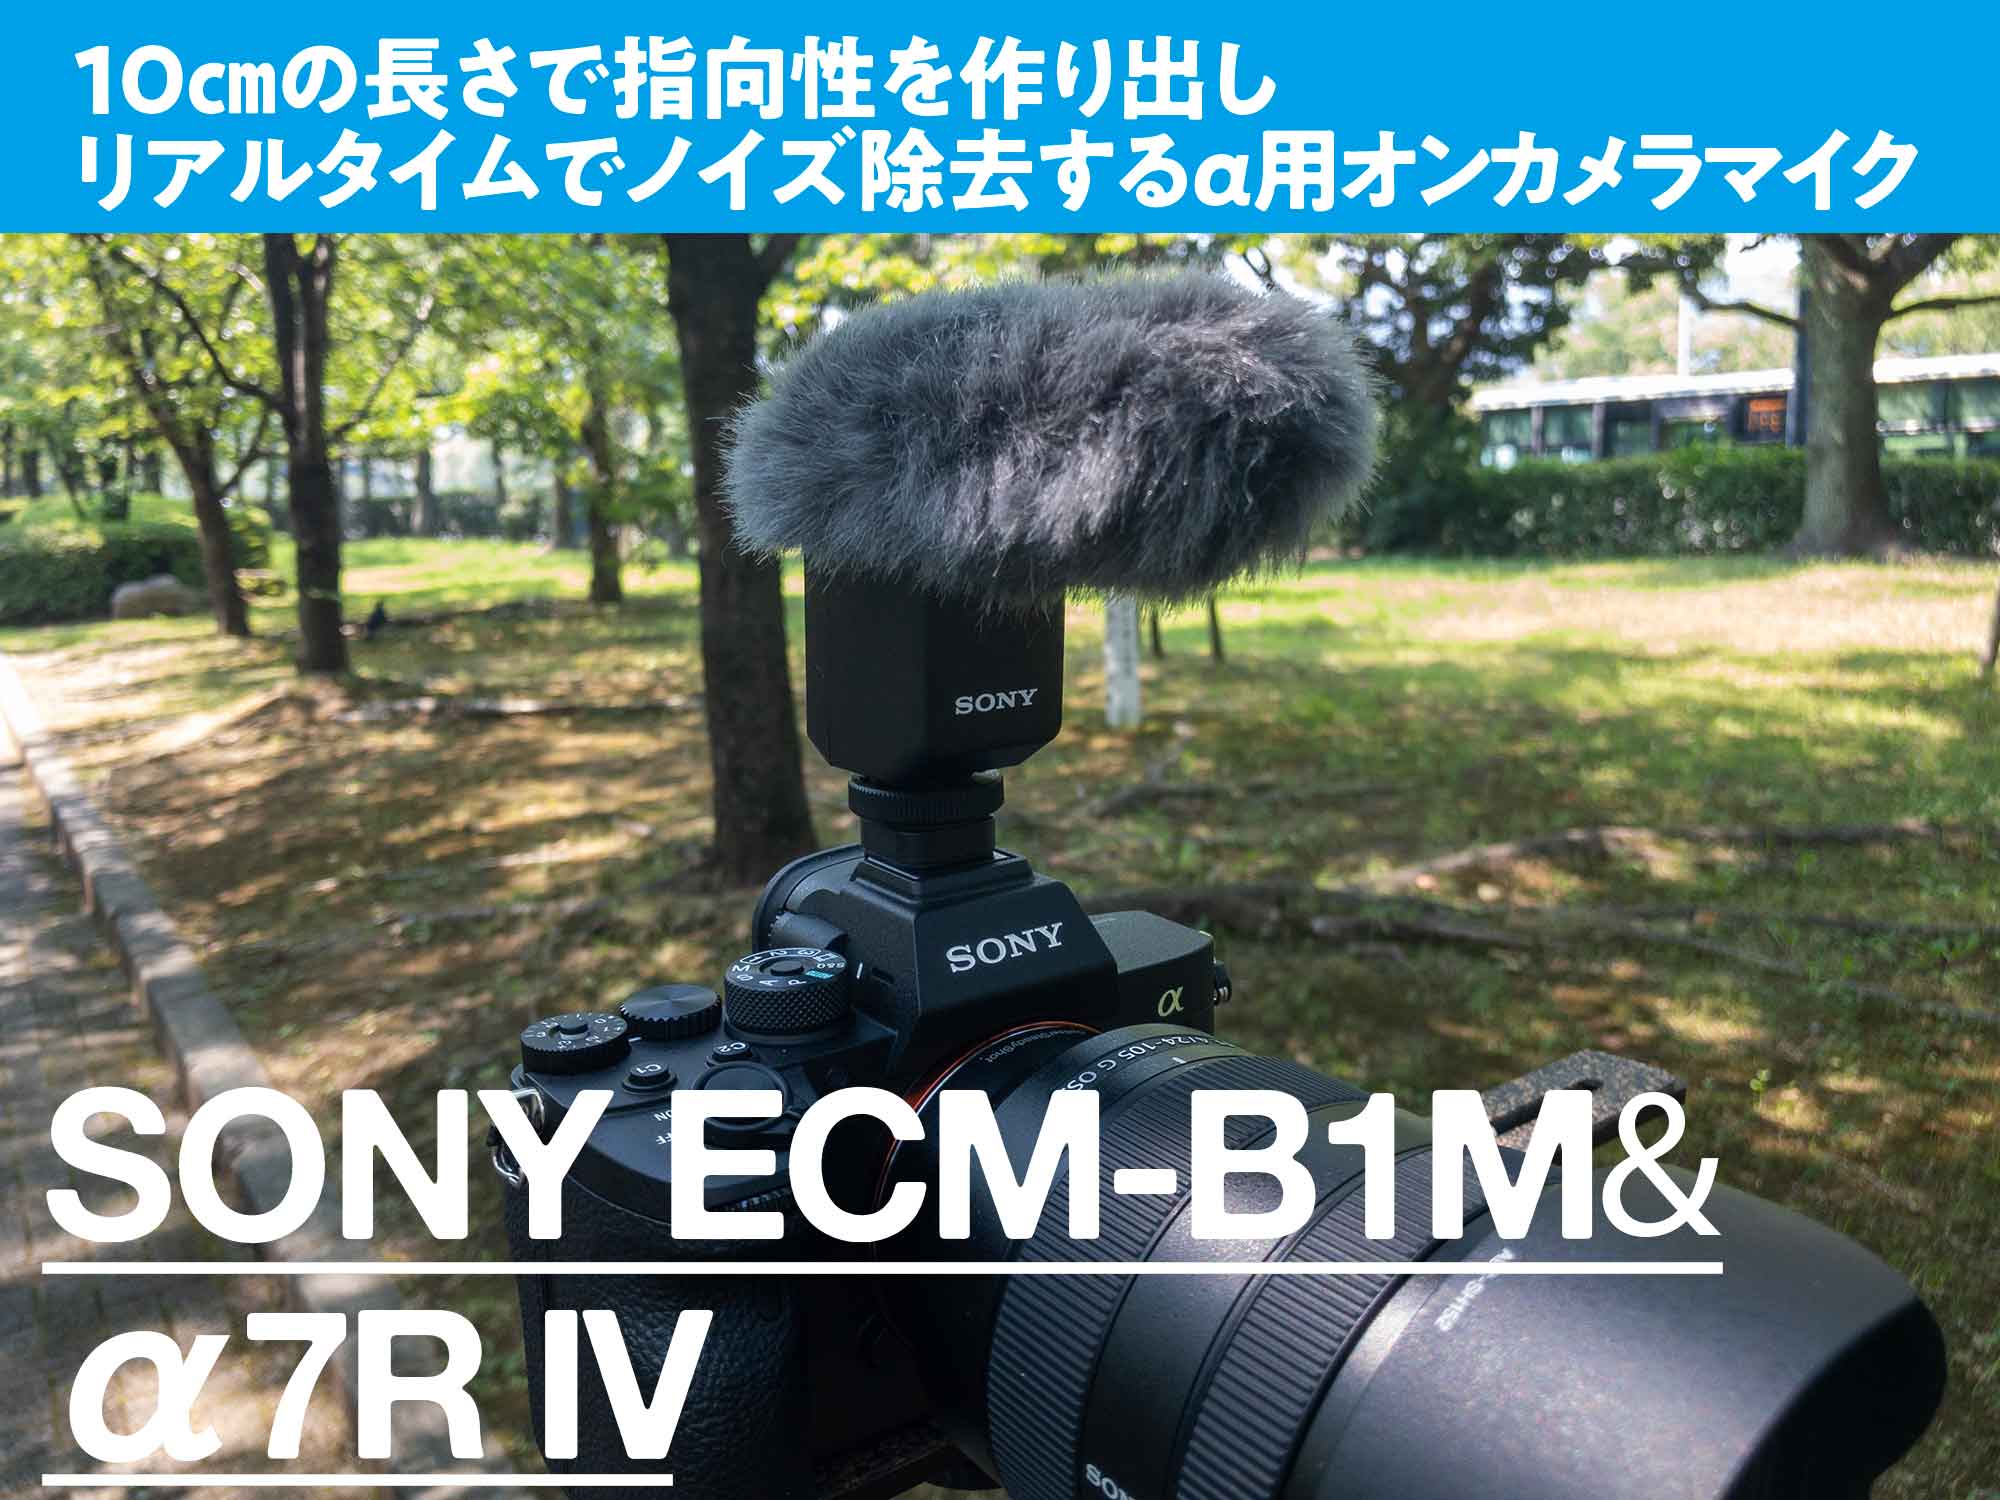 ☆日本の職人技☆ SONY ショットガンマイクロホン ECM-B1M www